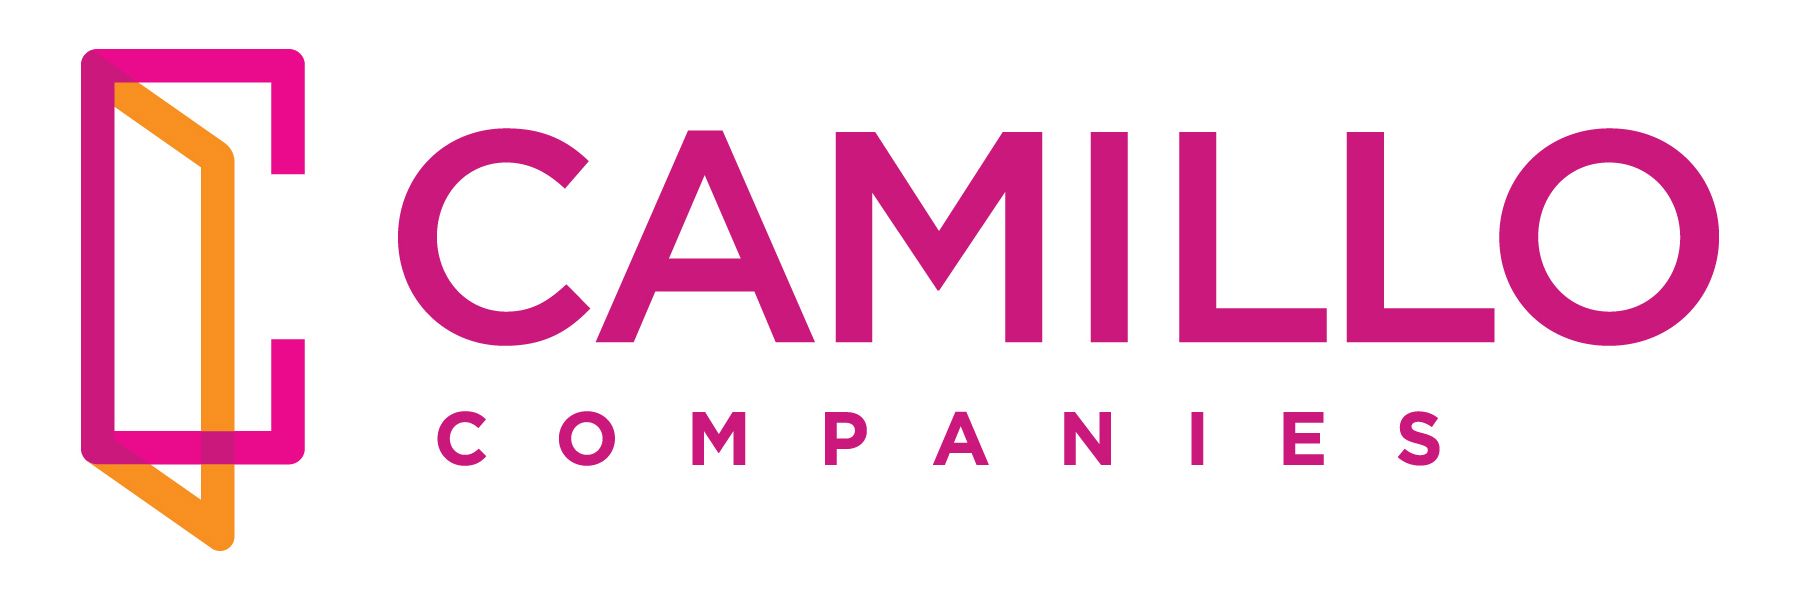 Camillo Companies Logo